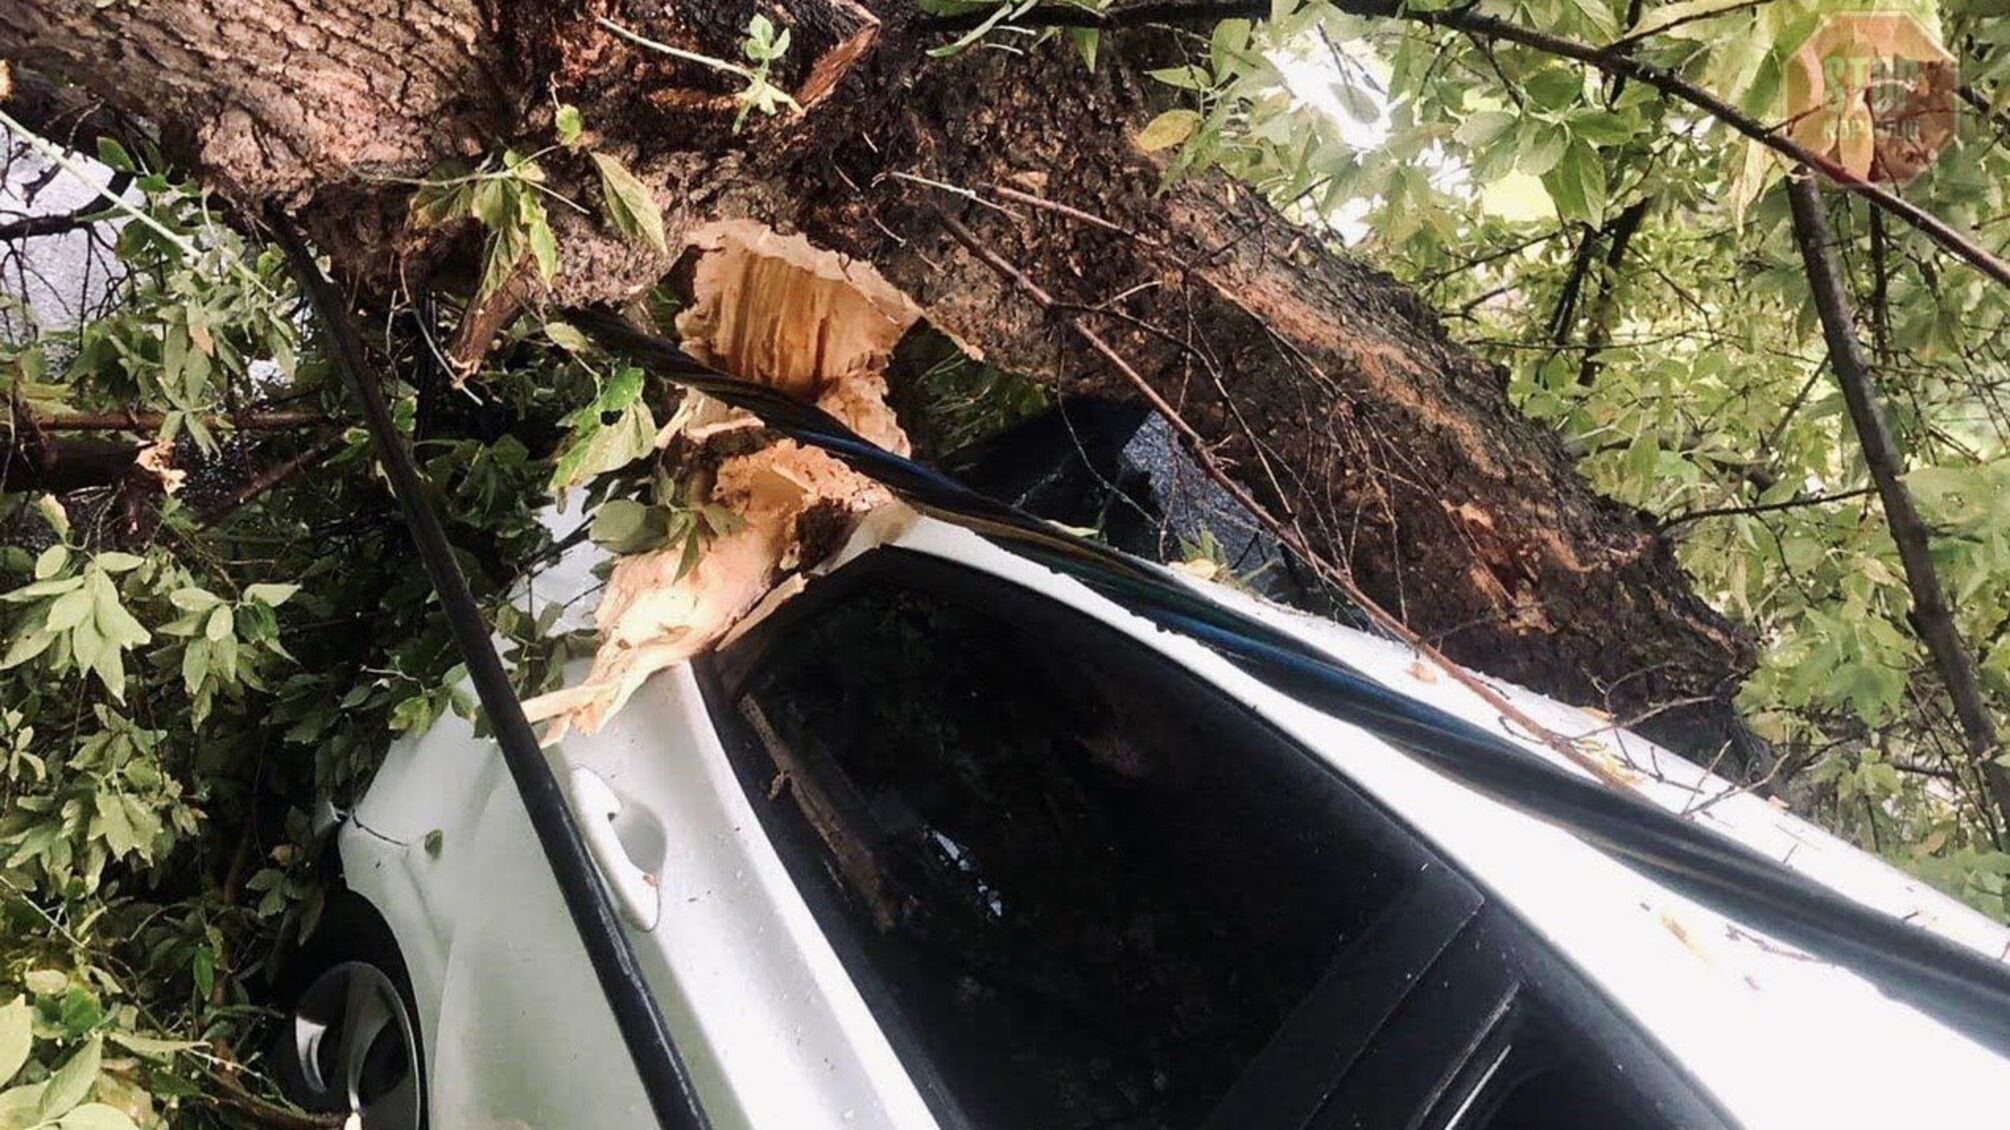 У Києві дерево впало на автомобіль знімальної групи: всередині була вагітна журналістка (фото)